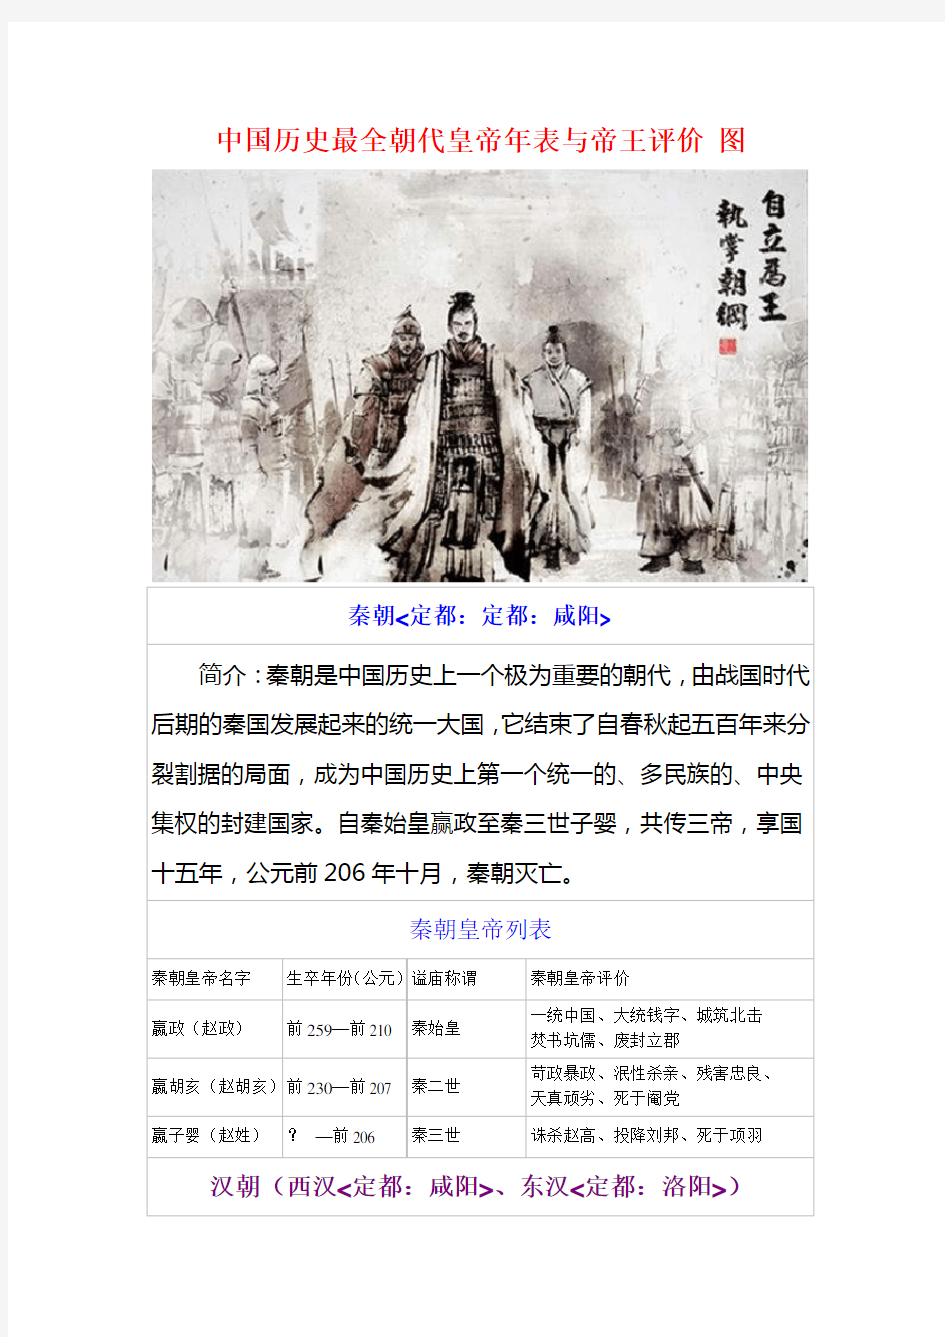 中国历史最全朝代皇帝年表与帝王评价 图